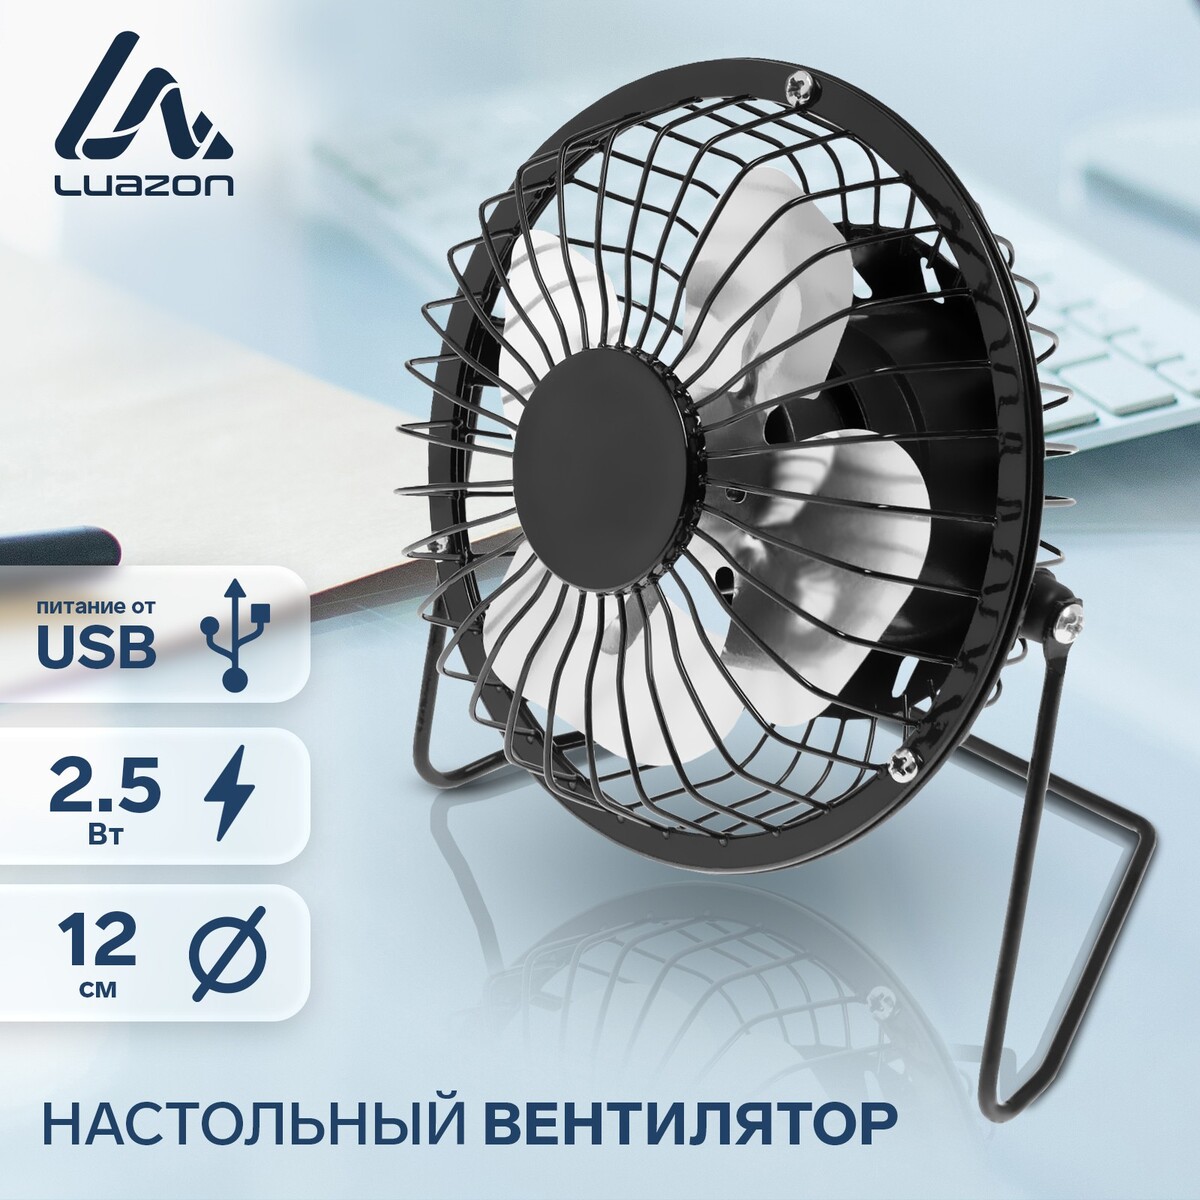 Вентилятор luazon lof-05, настольный, 2.5 вт, 12 см, металл, черный вентилятор вытяжной настенный event установочный диаметр 100 мм 100кс turbo